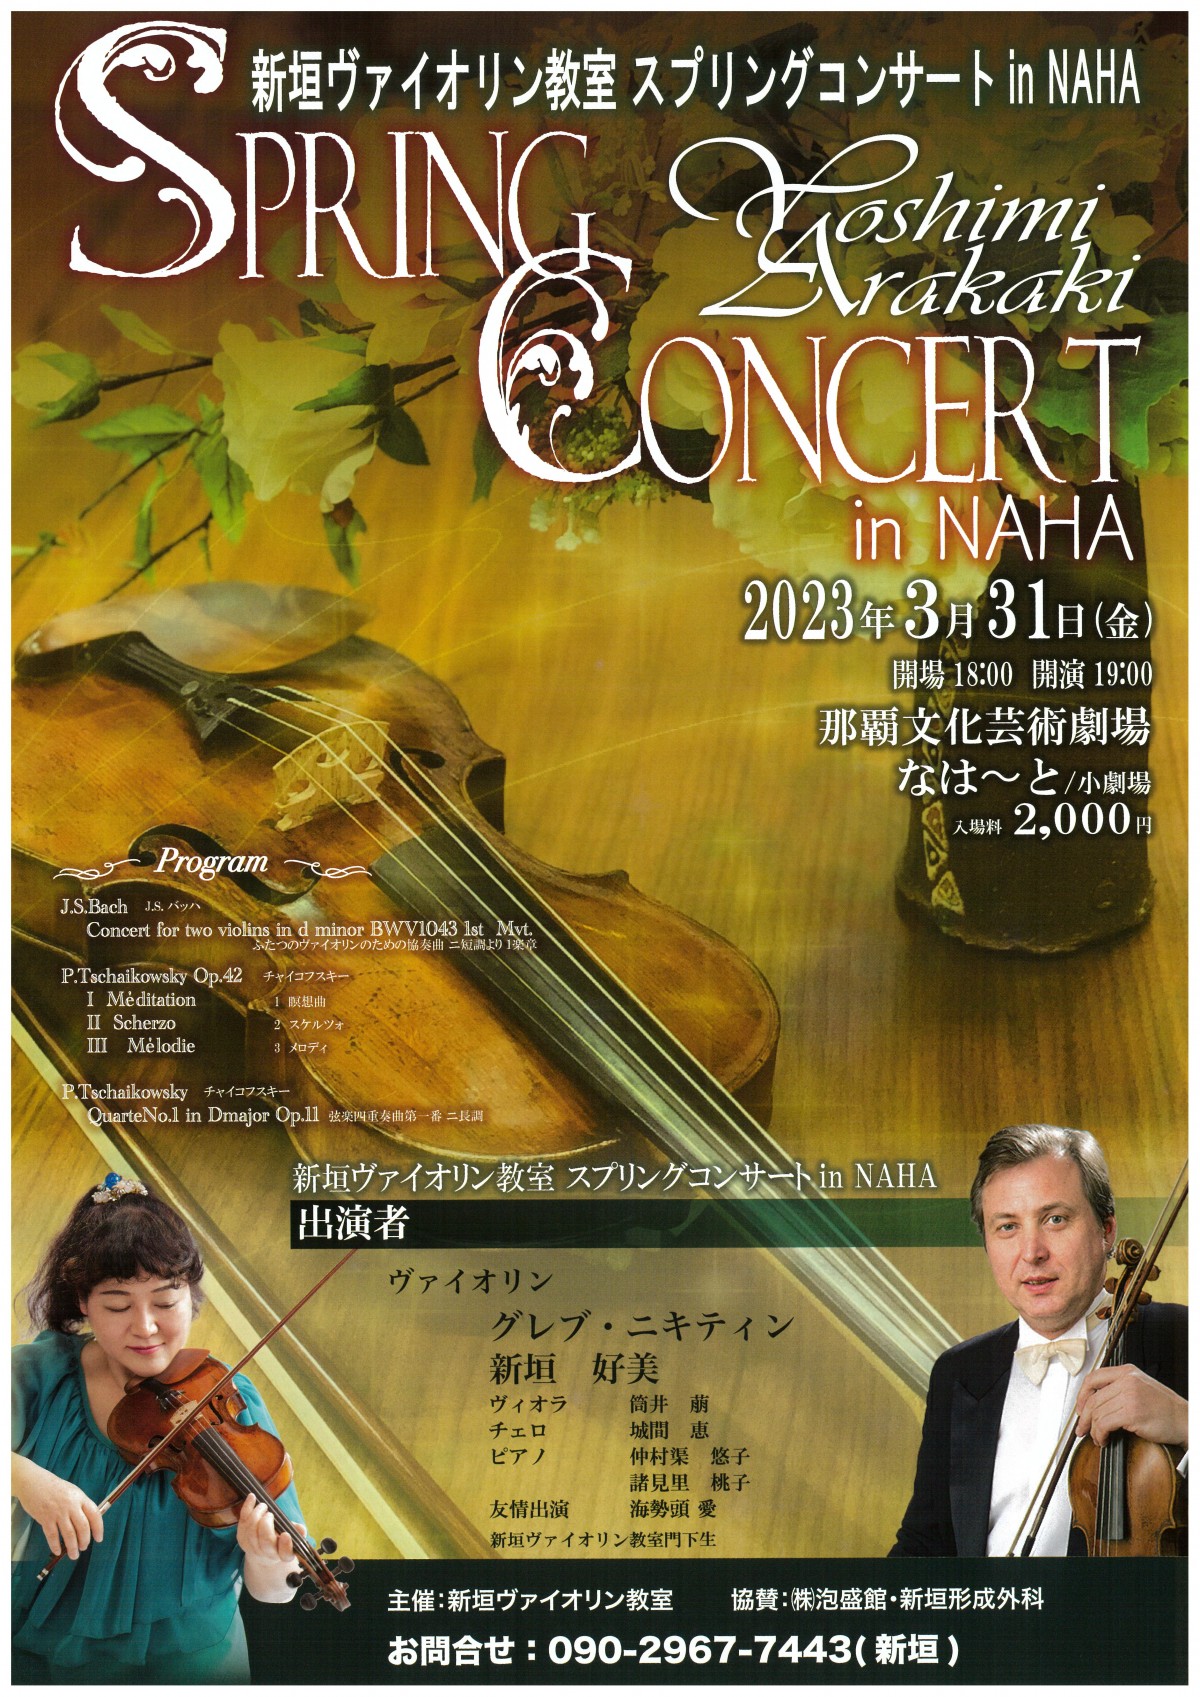 Spring concert in NAHA